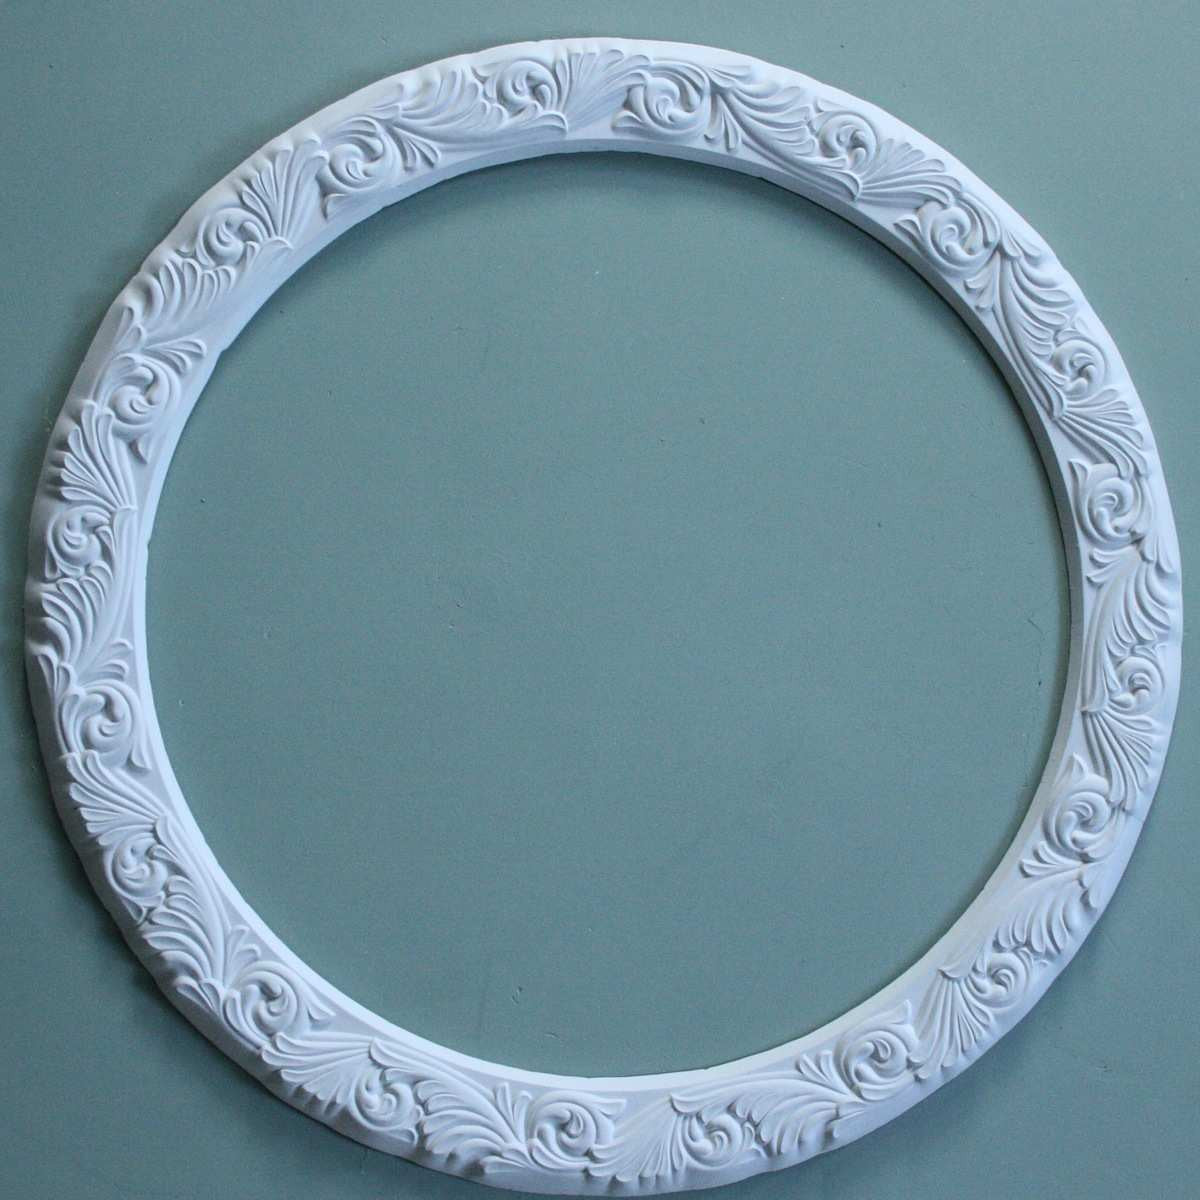 4 o raised plaster ring